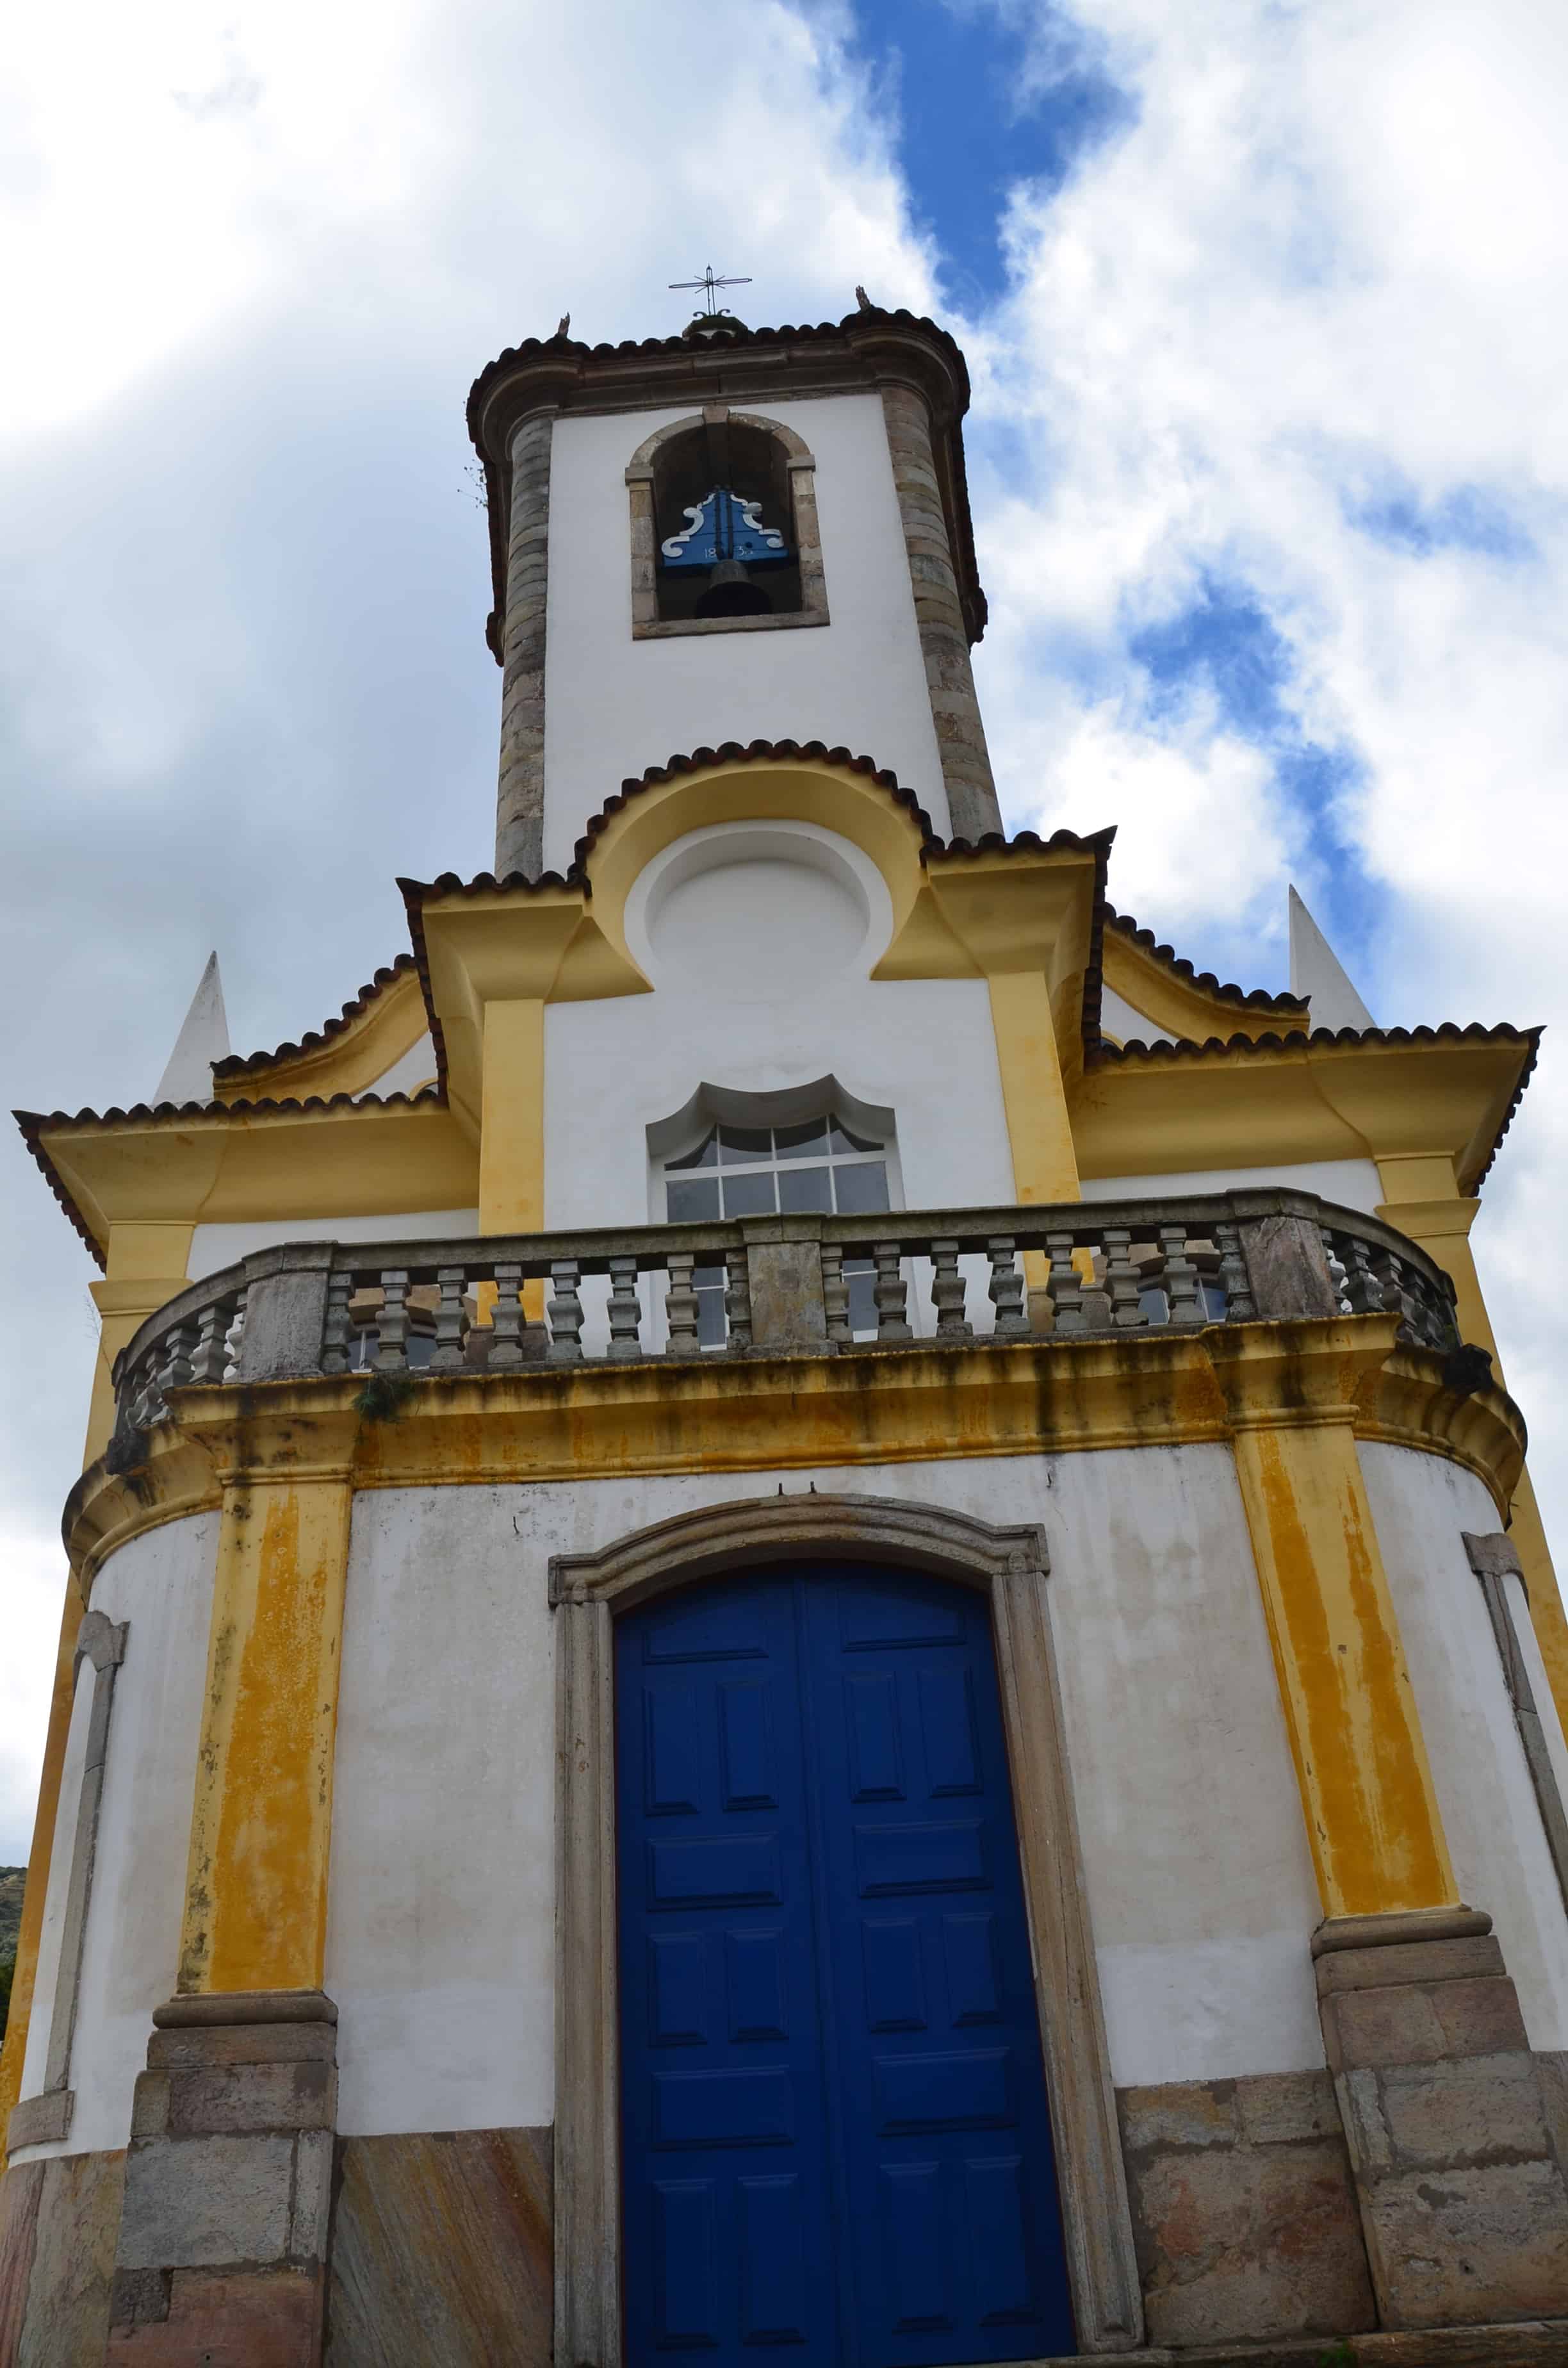 São José in Ouro Preto, Brazil